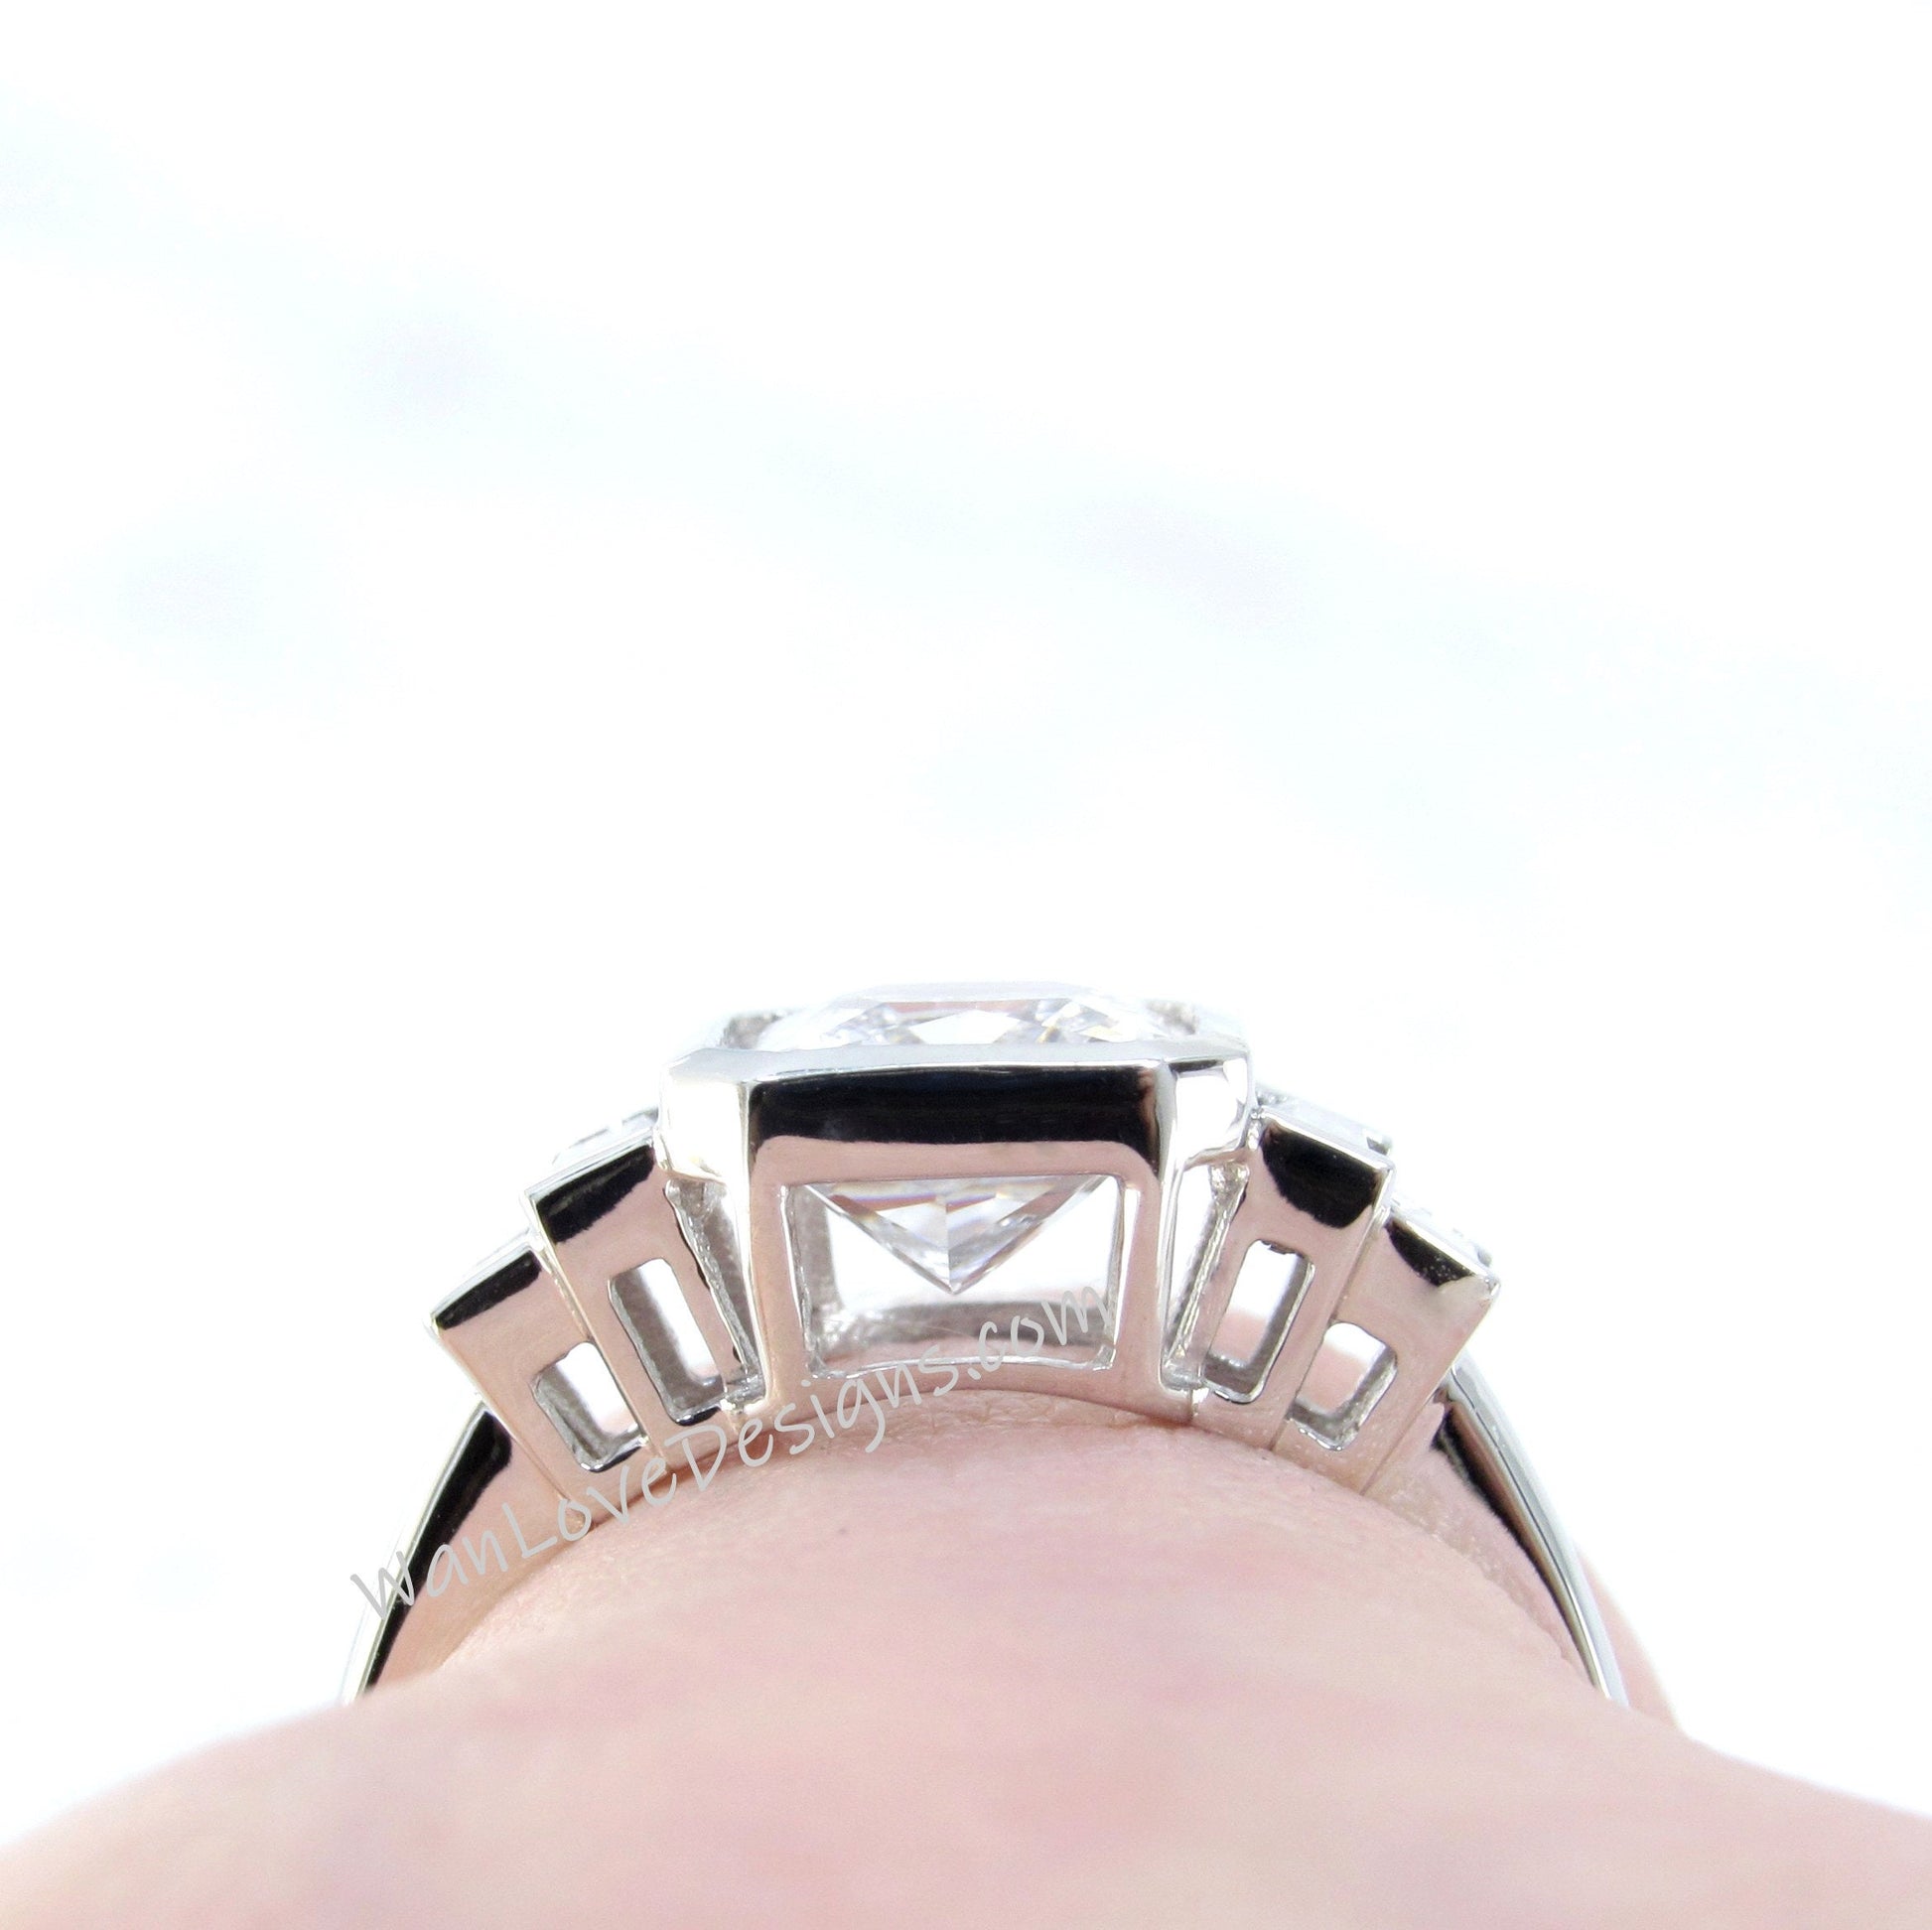 White Sapphire Emerald Baguette Bezel Engagement Ring art deco 3ct radiant bezel white gold ring wedding promise ring anniversary gift-Ready